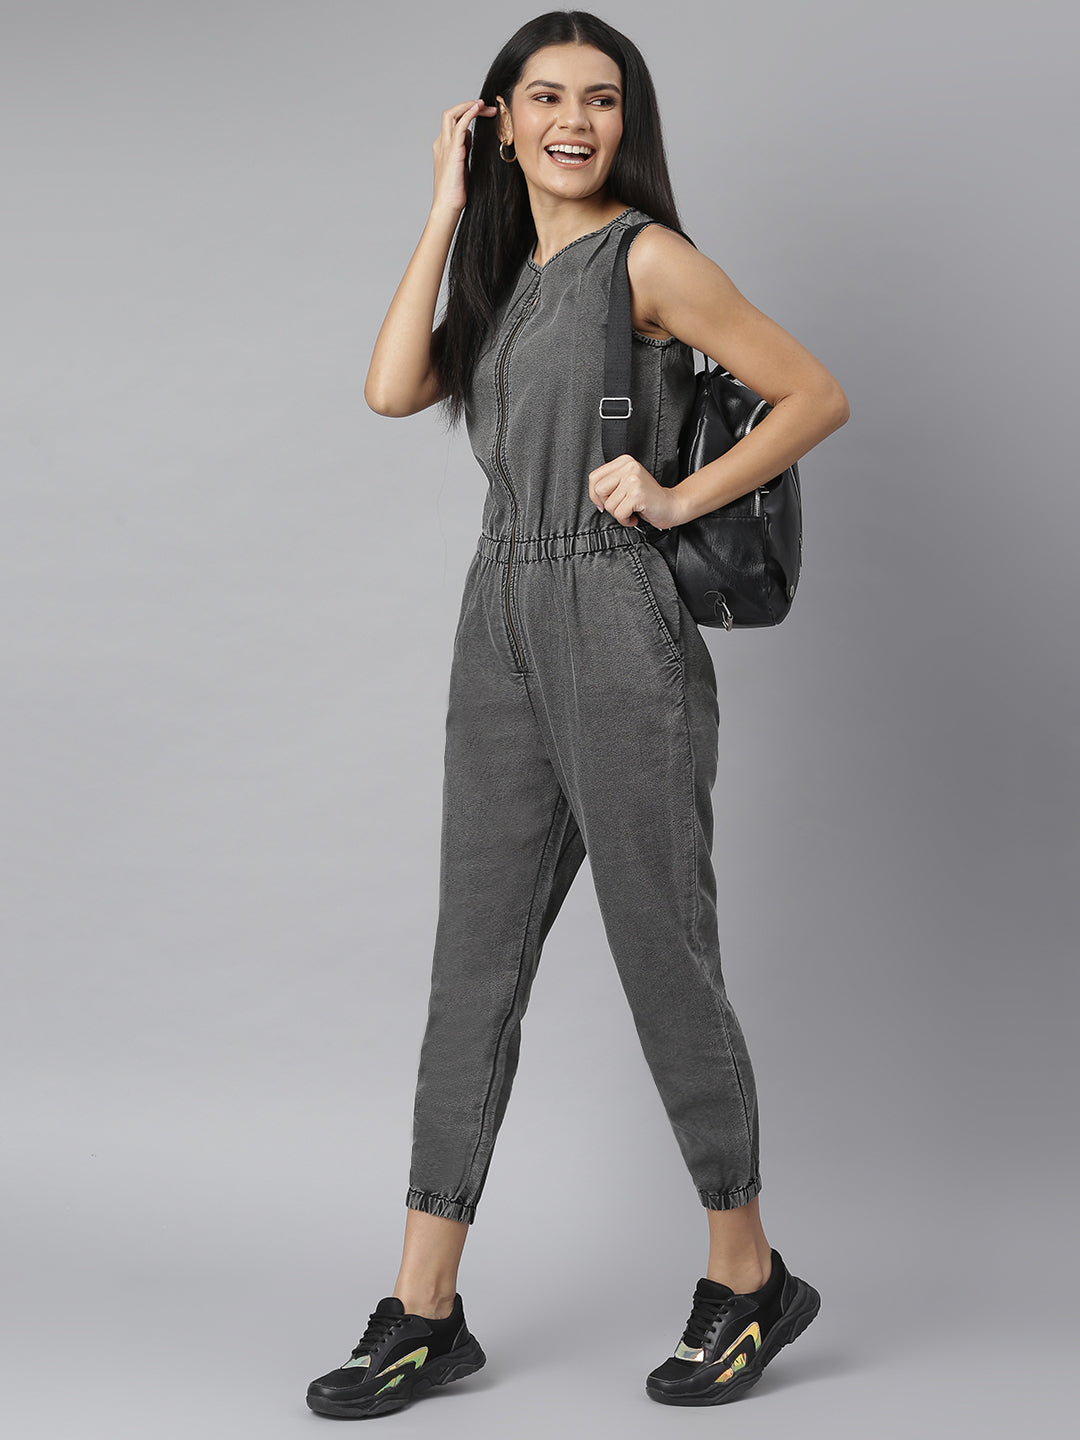 Women's Grey Denim Jumpsuit with front Zip